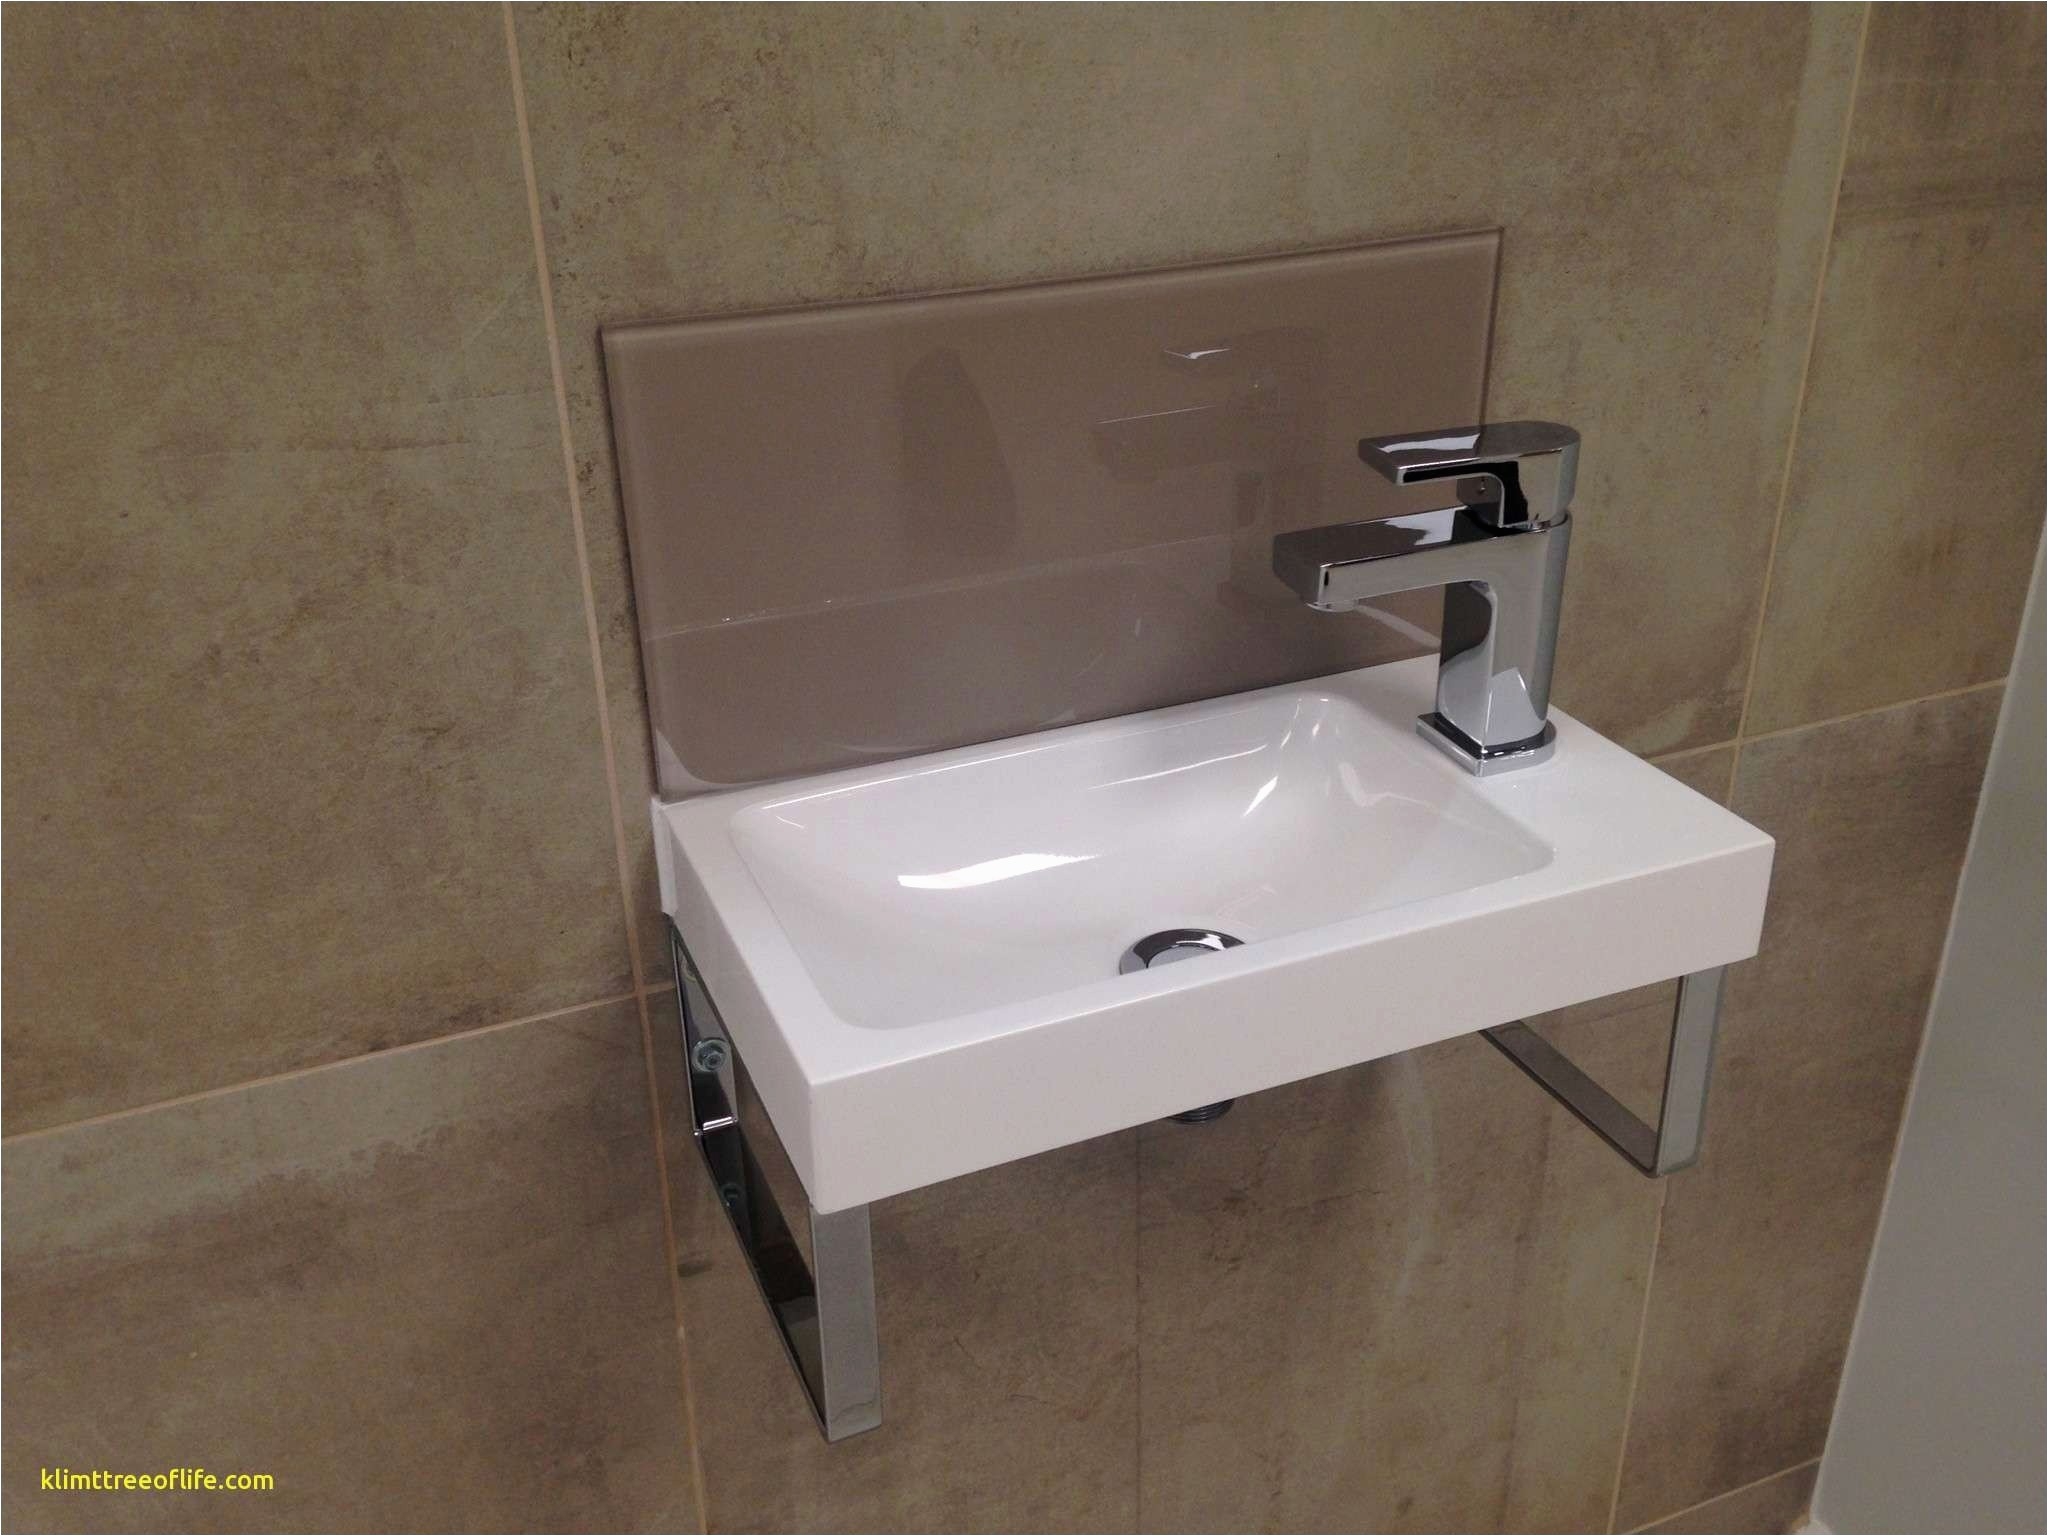 s Bathroom Tile Designs Tile Bathroom Ideas New Tag Toilet Ideas 0d Modern House Ideas And